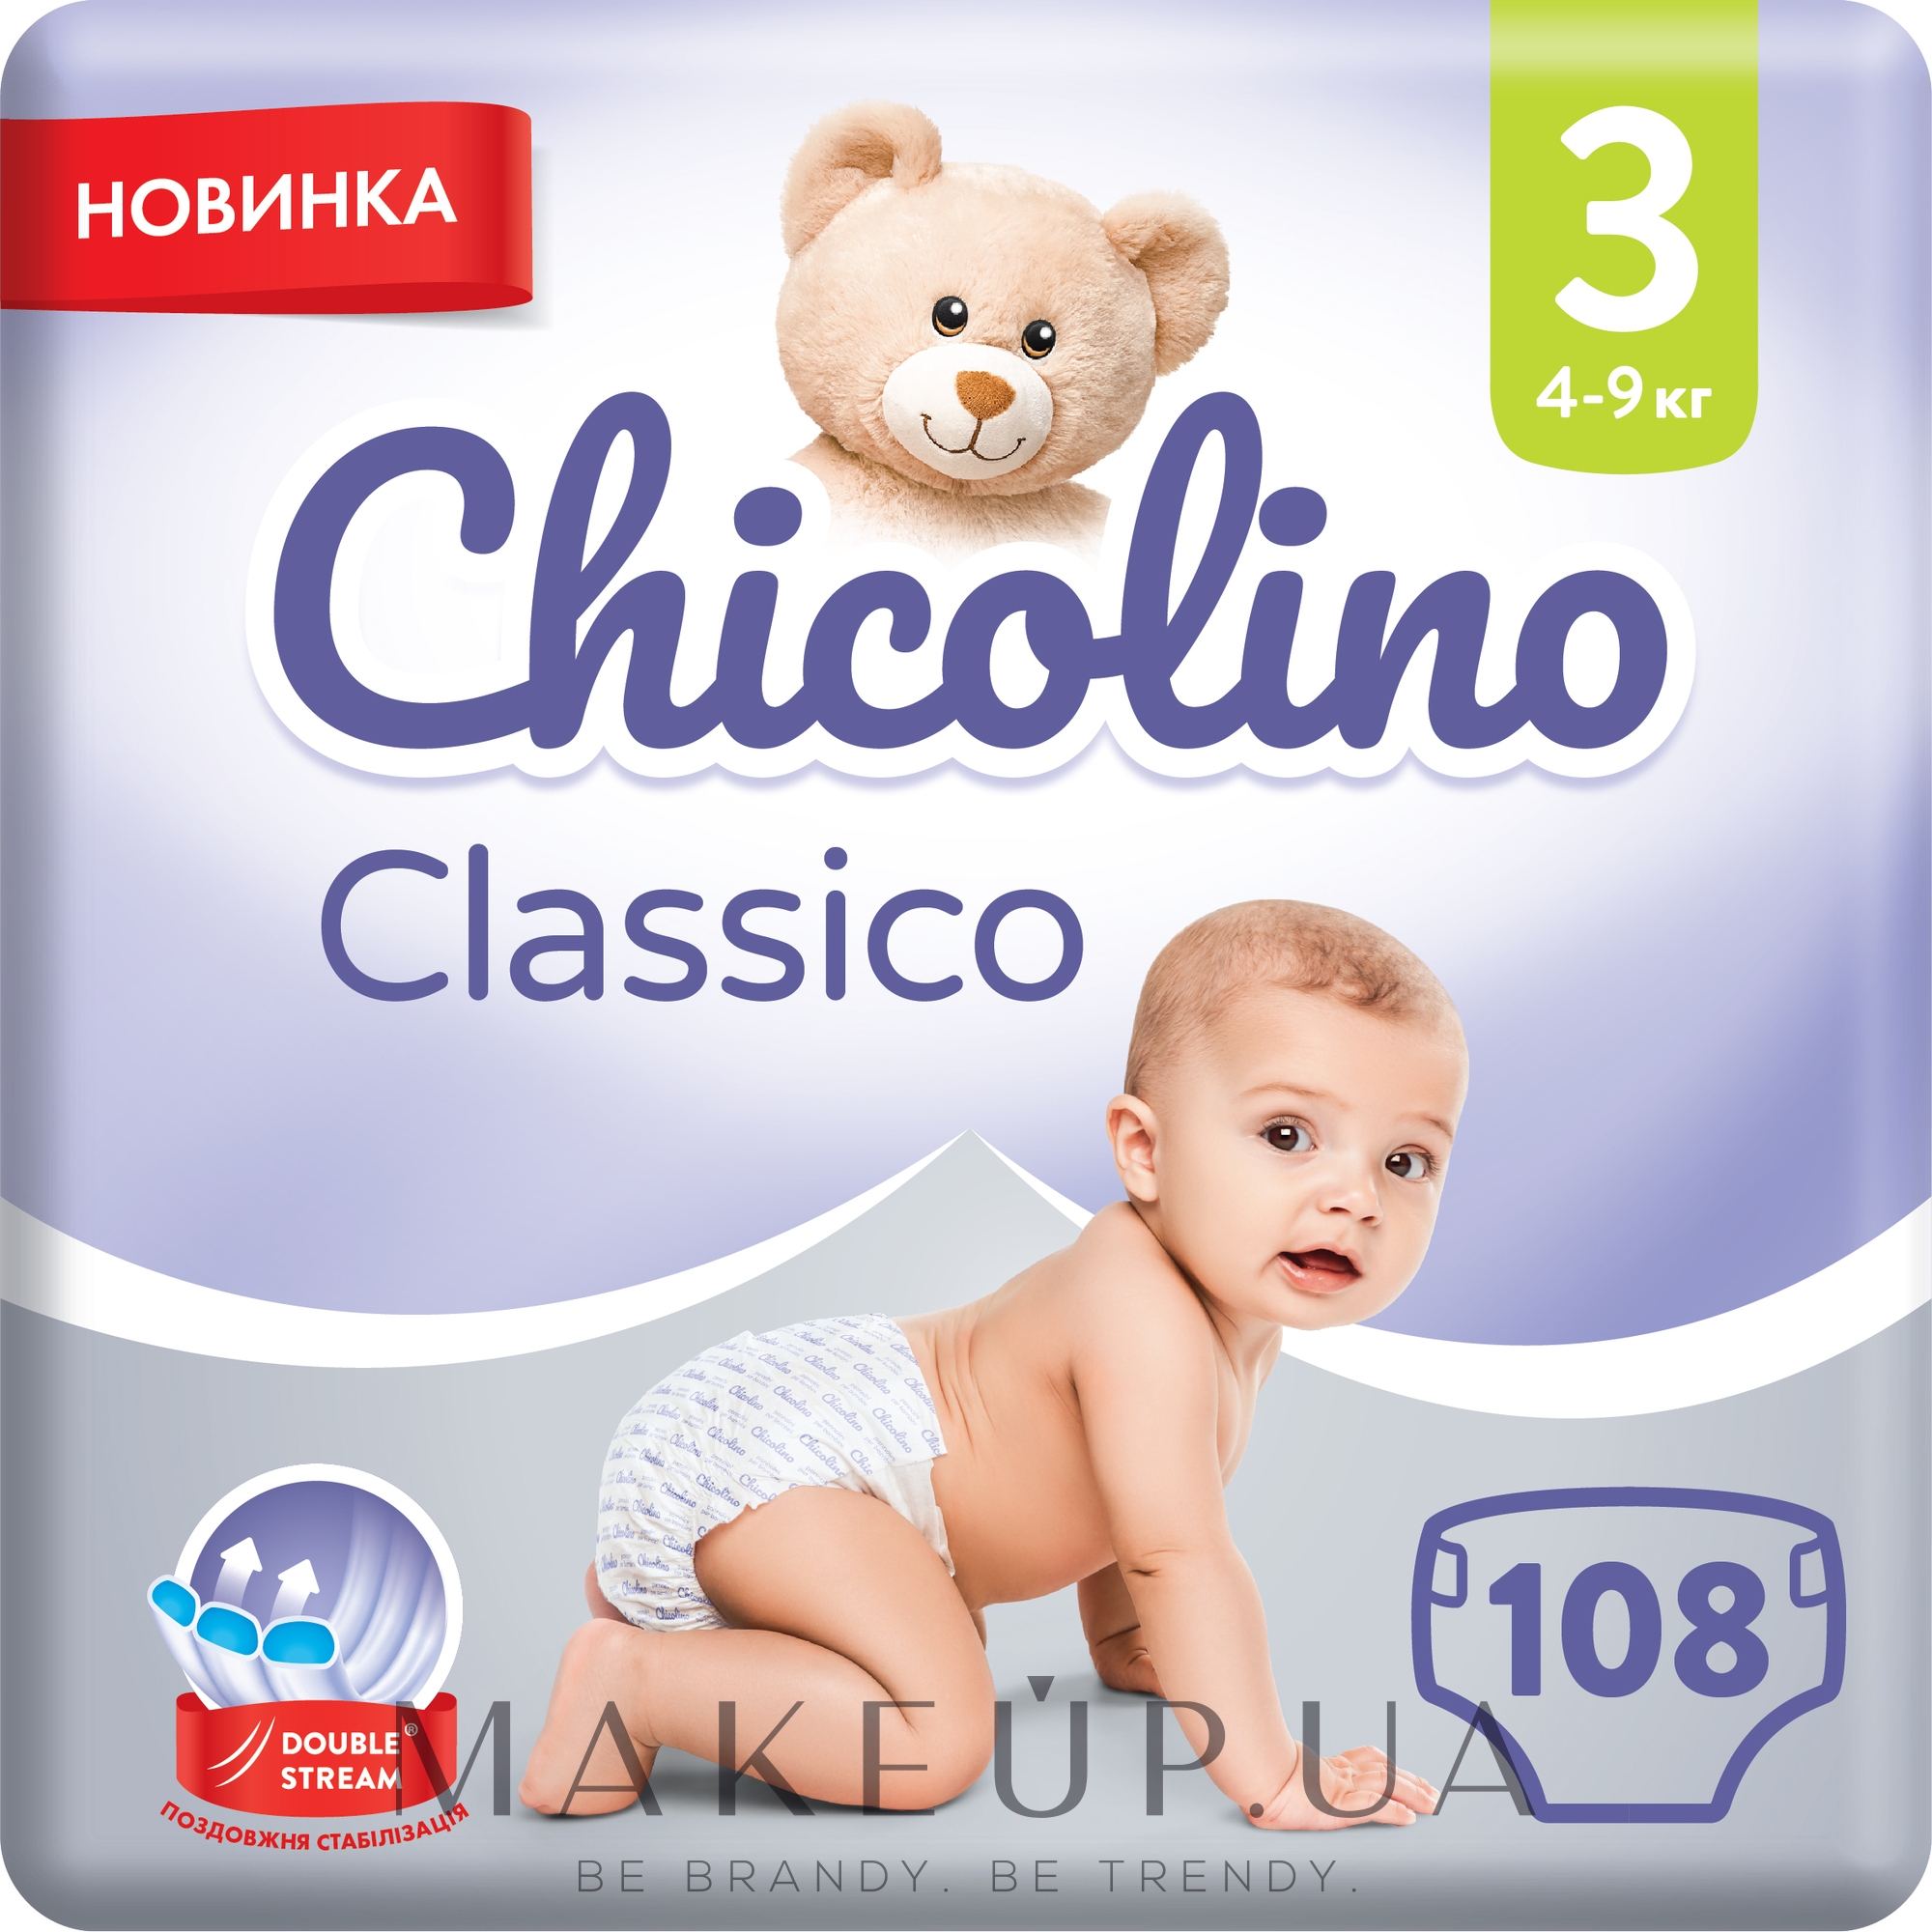 Дитячі підгузки "Classico", 4-9 кг, розмір 3, 108 шт. - Chicolino — фото 108шт